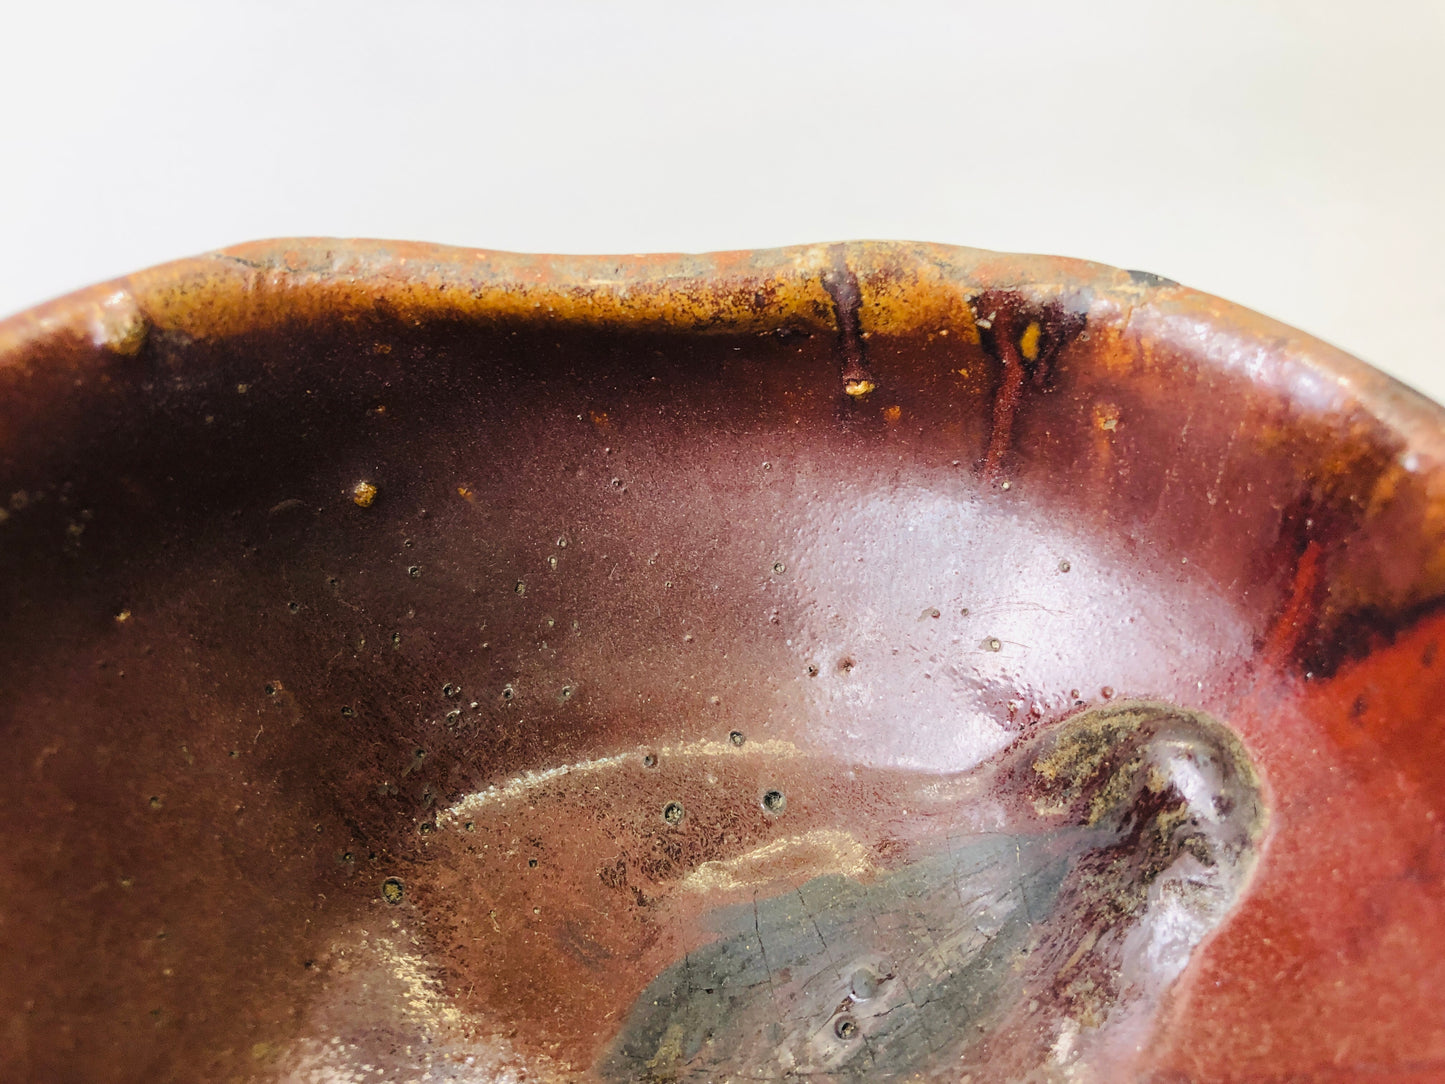 Y6148 [VIDEO] CHAWAN Seto-ware Tenmoku bowl Japan antique tea ceremony vintage pottery